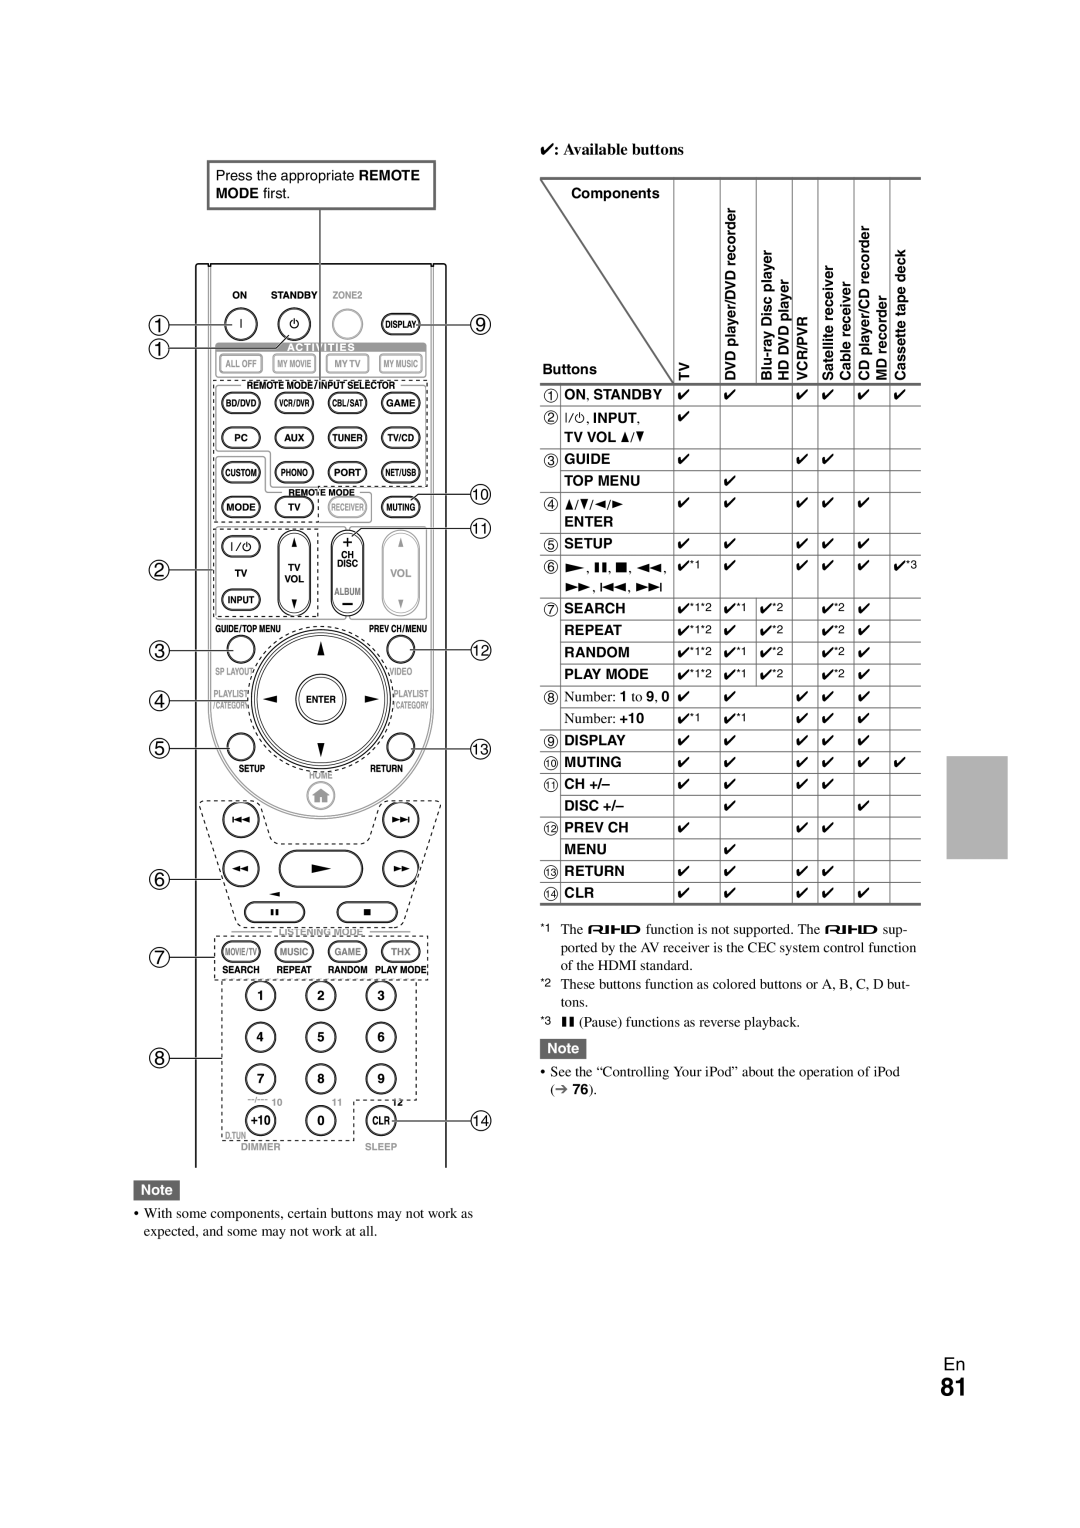 Onkyo TX-NR708 instruction manual ai a j k b cl d em f g h n 